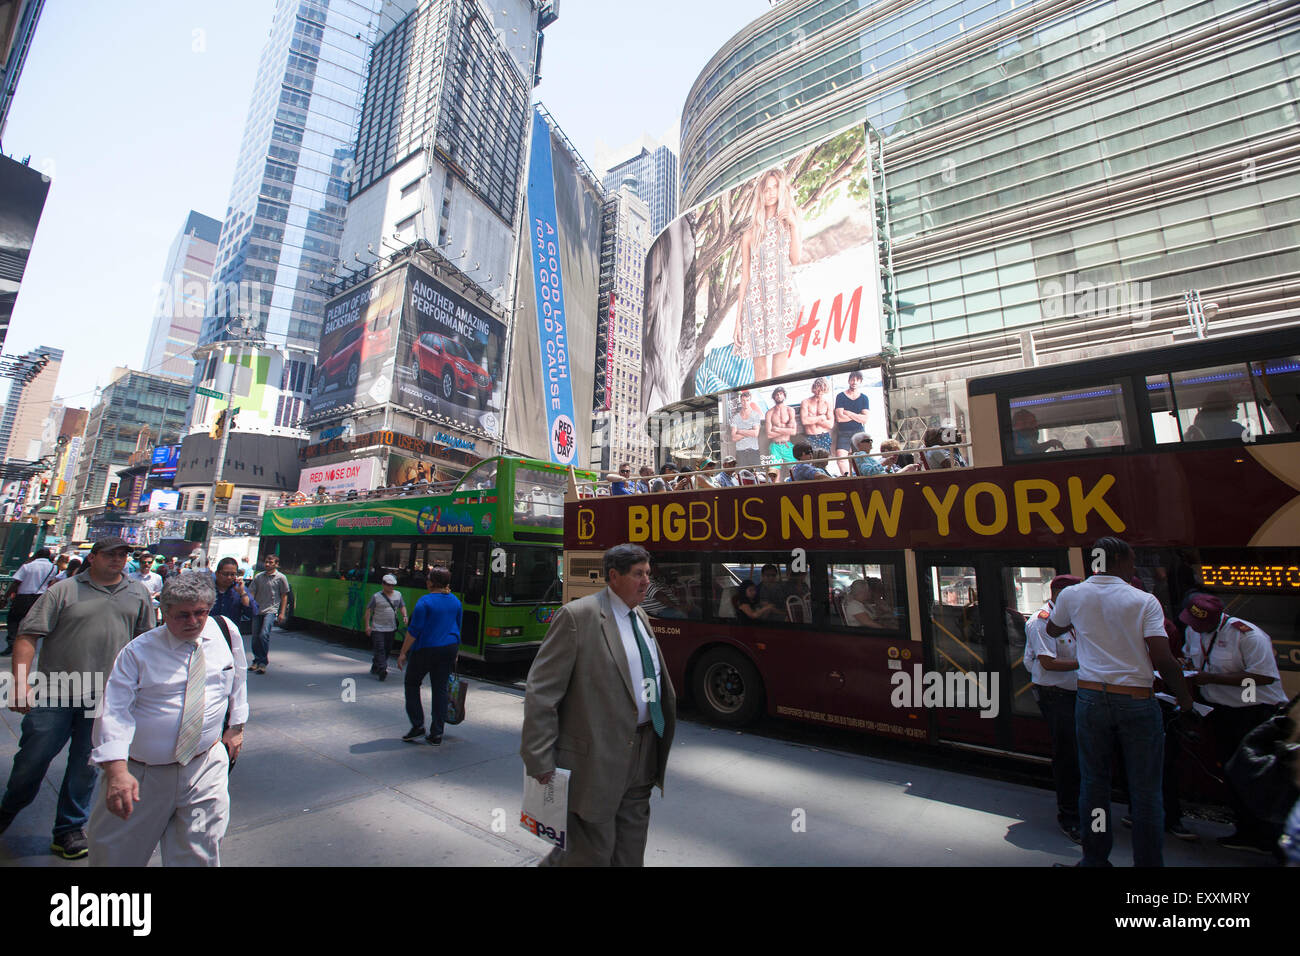 NEW YORK - Mai 29, 2015 : Times Square occupé avec les gens et les touristes. Plus de 300 000 personnes visitent cette place tous les jours. Banque D'Images